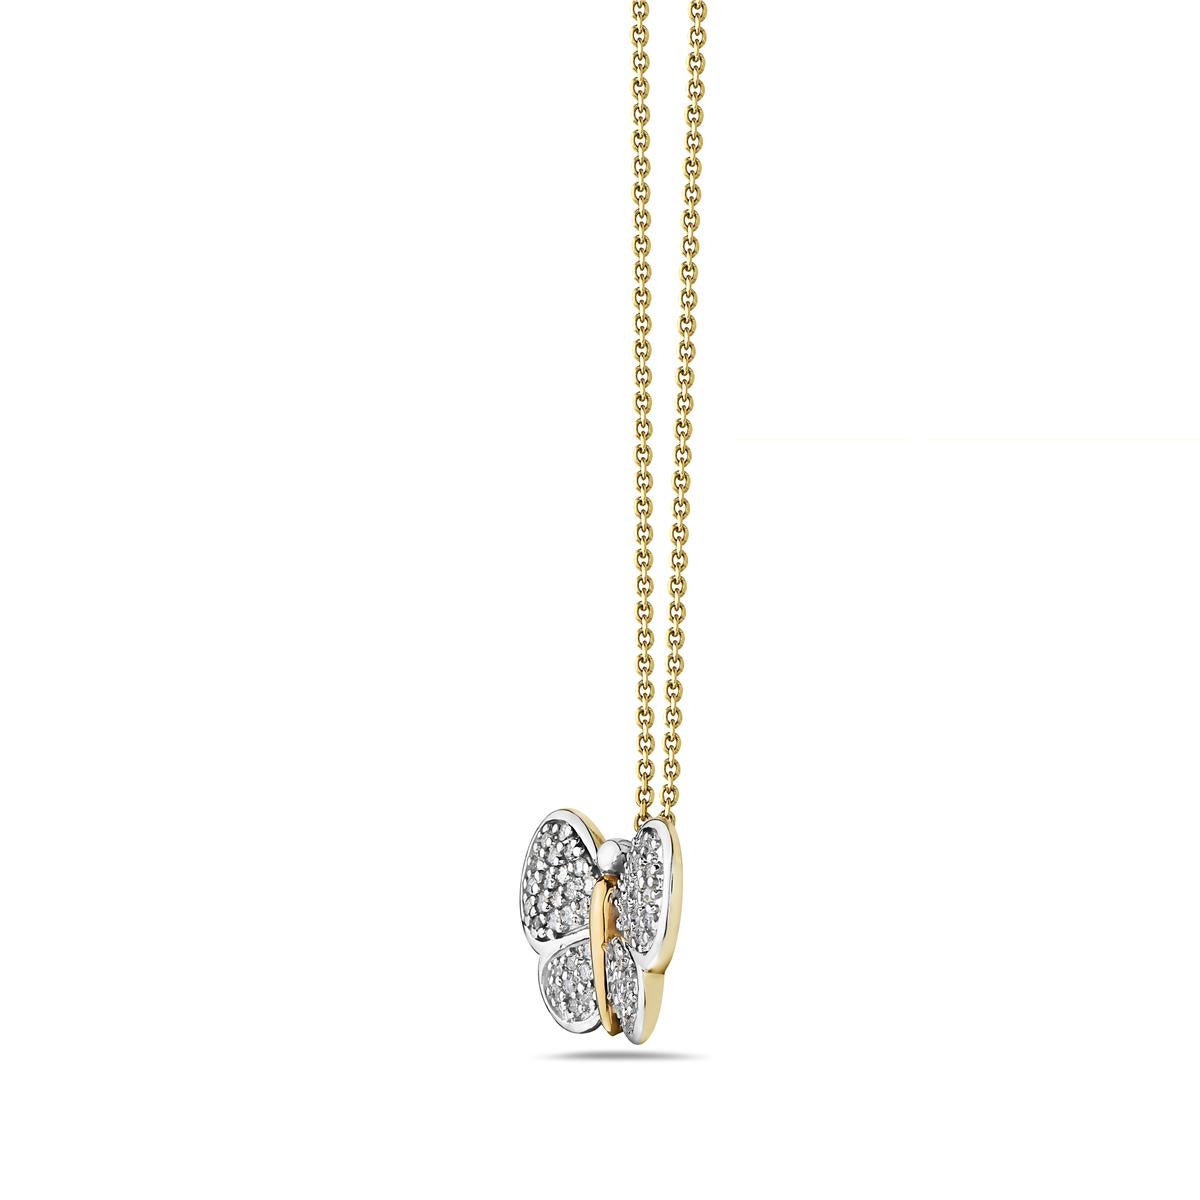 Diese Halskette besteht aus 0,55 Karat Diamanten, die in 14 Karat Gelb- und Weißgold gefasst sind. Hergestellt in den USA

Besichtigungen in unserem Ausstellungsraum in NYC sind nach Vereinbarung möglich.
